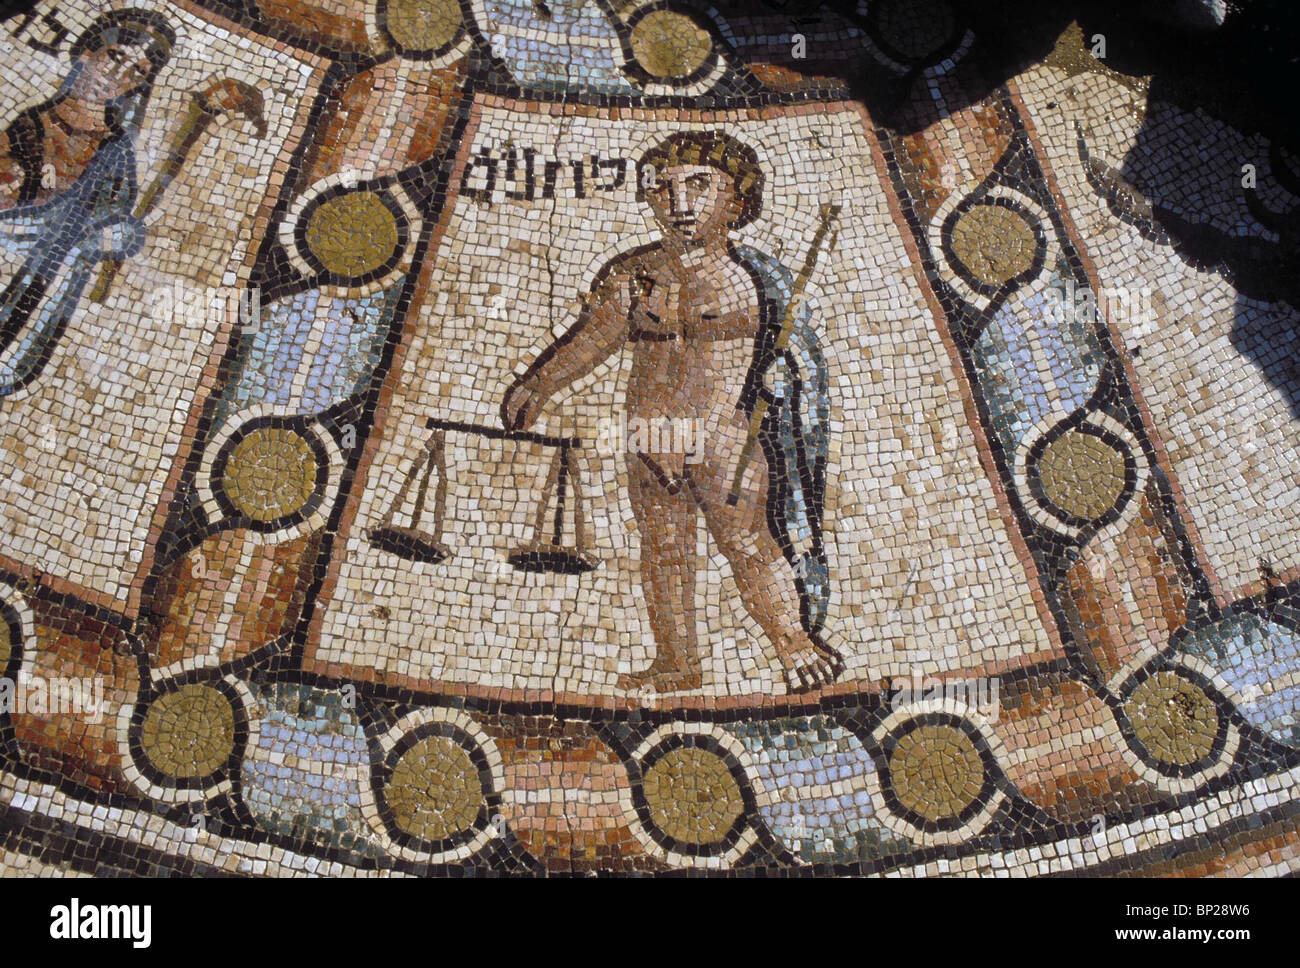 2363. HAMAT TIBERIADE sinagoga pavimento a mosaico. Dettaglio da zodiaco raffigurante il segno della bilancia Foto Stock